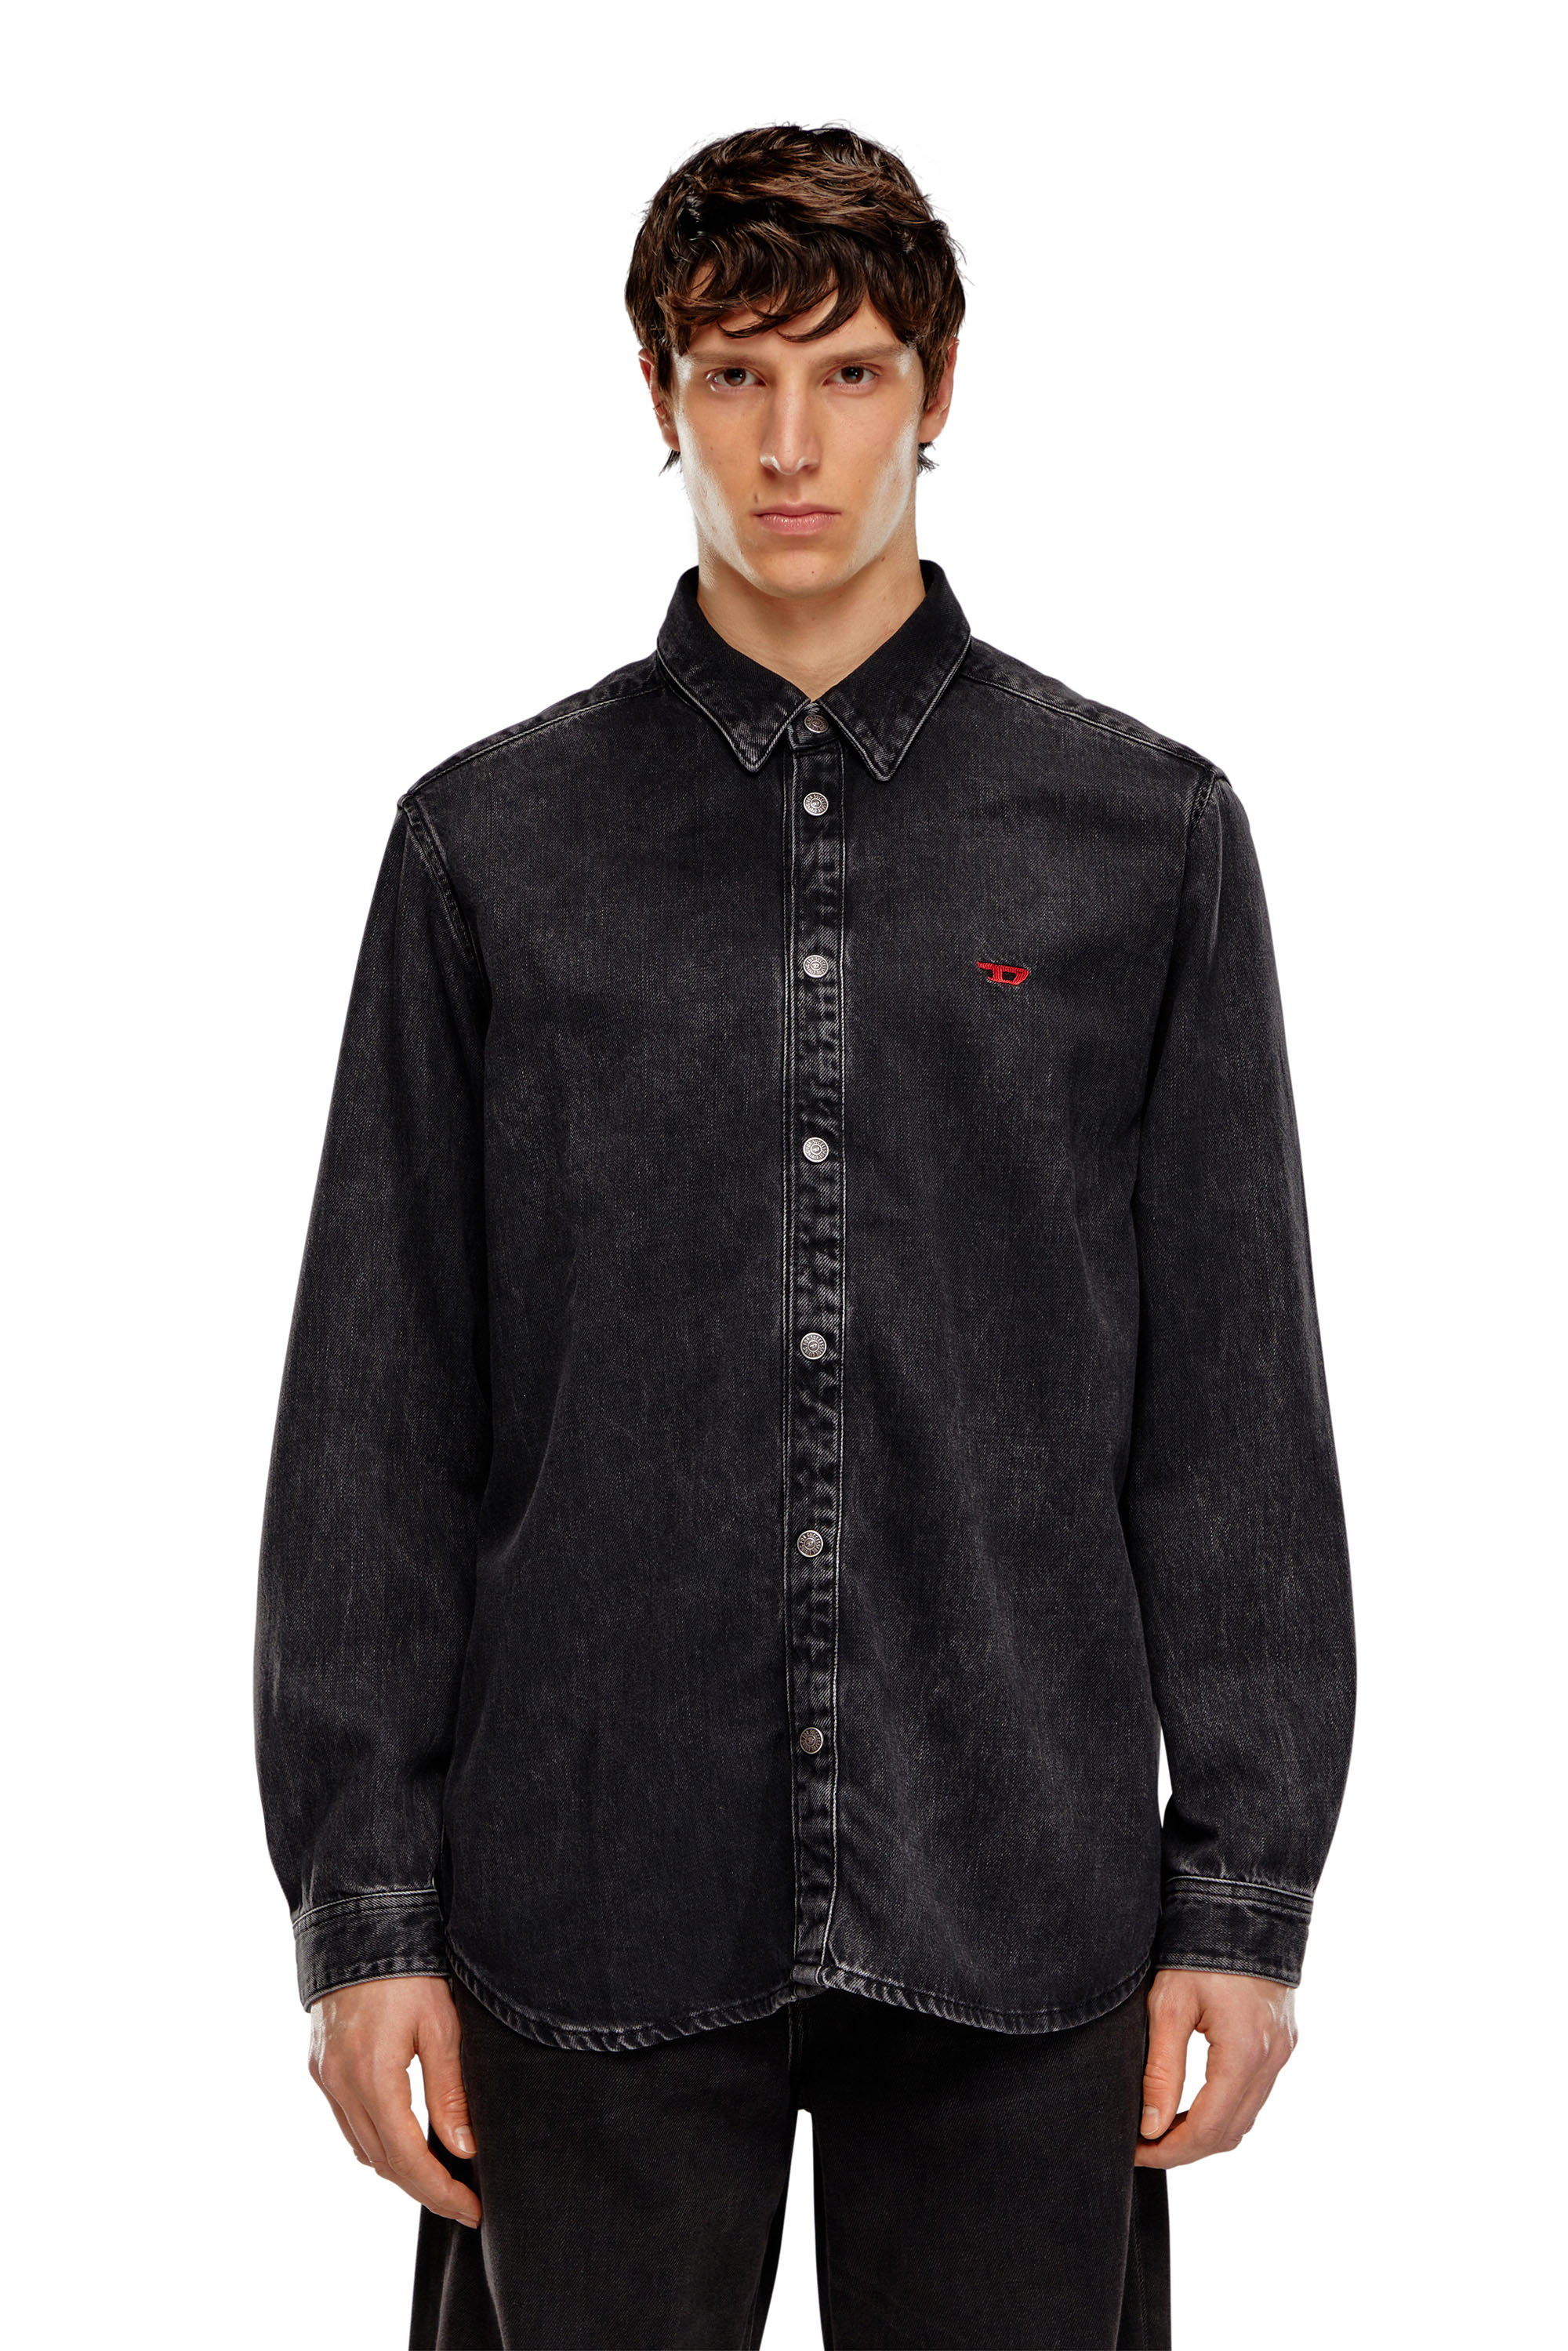 Diesel - D-SIMPLY, Man Shirt in Tencel denim in Black - Image 3